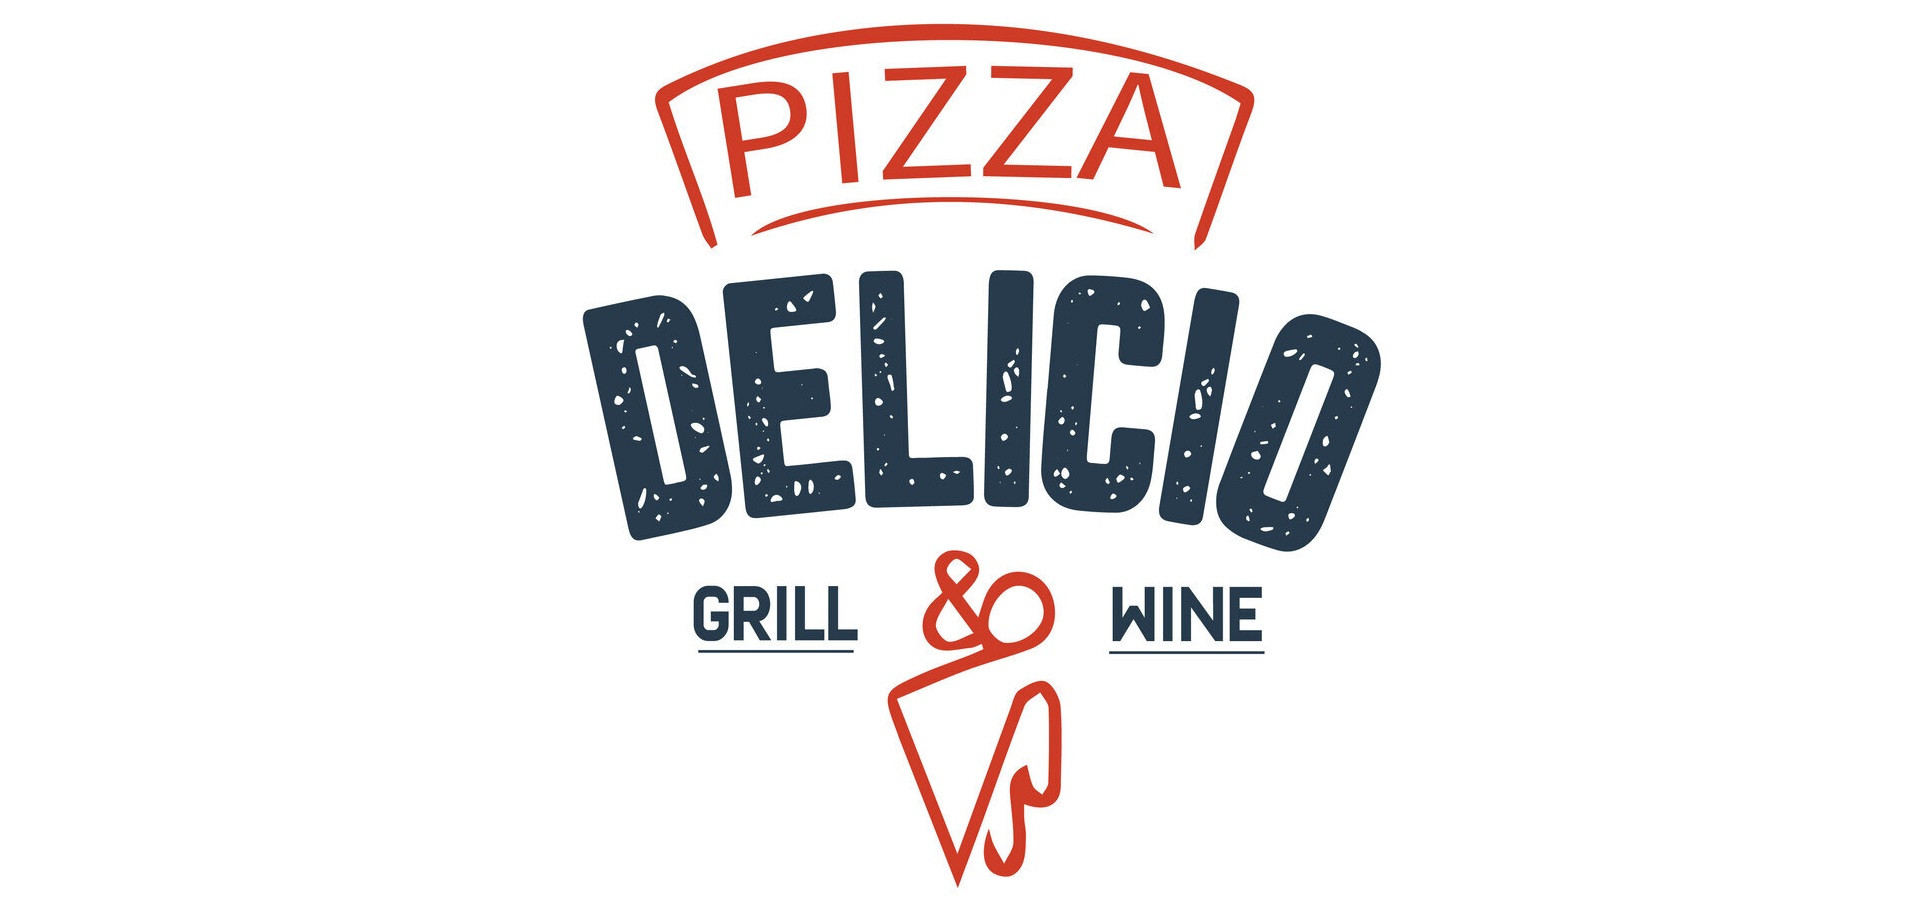 Bienvenue à Delicio pizza-grill & wine